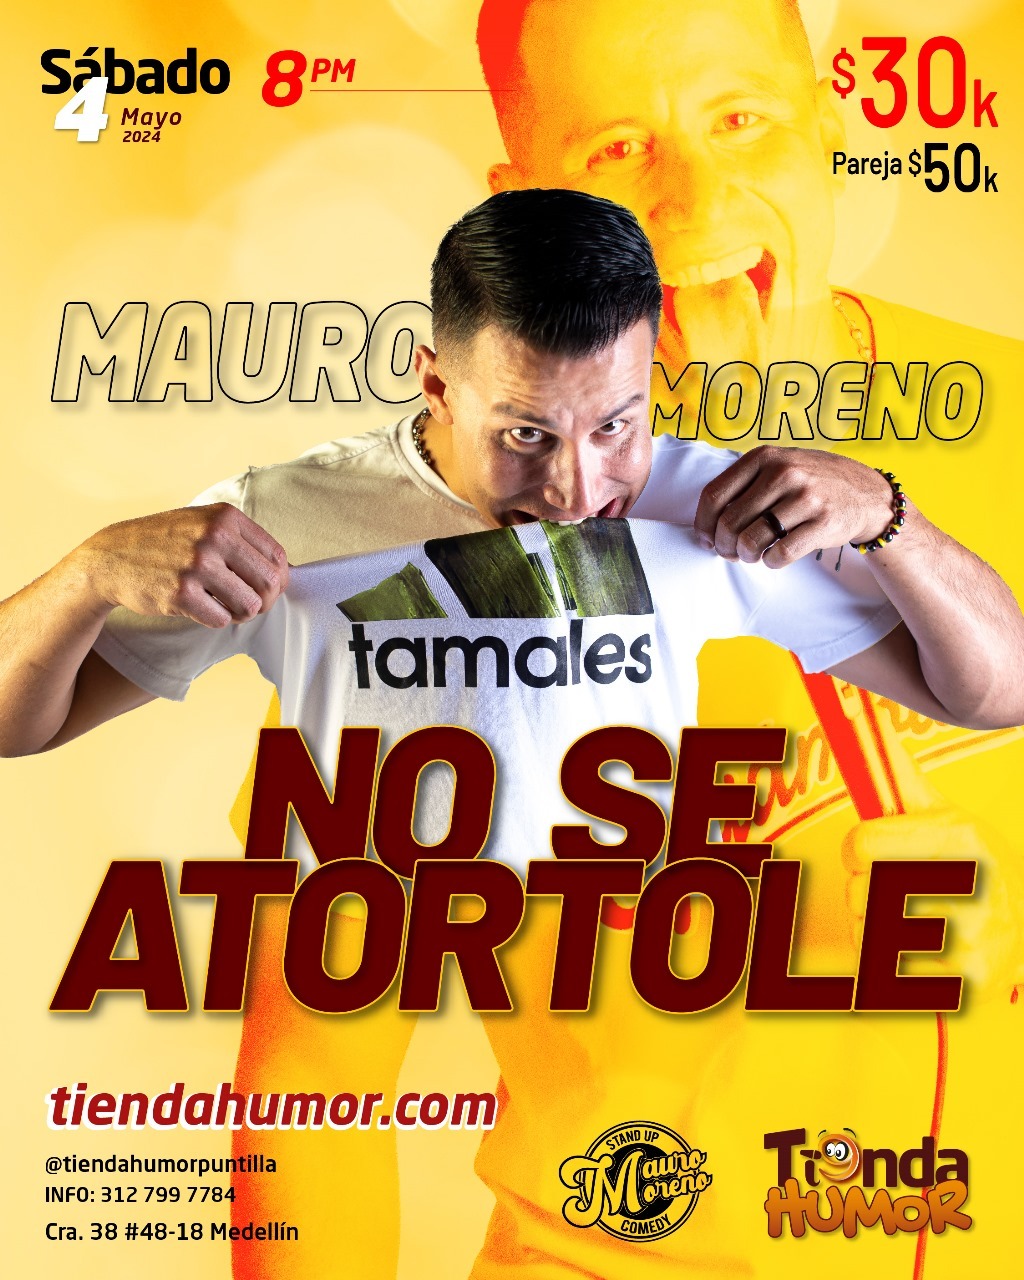 No se atortole - Mauro Moreno